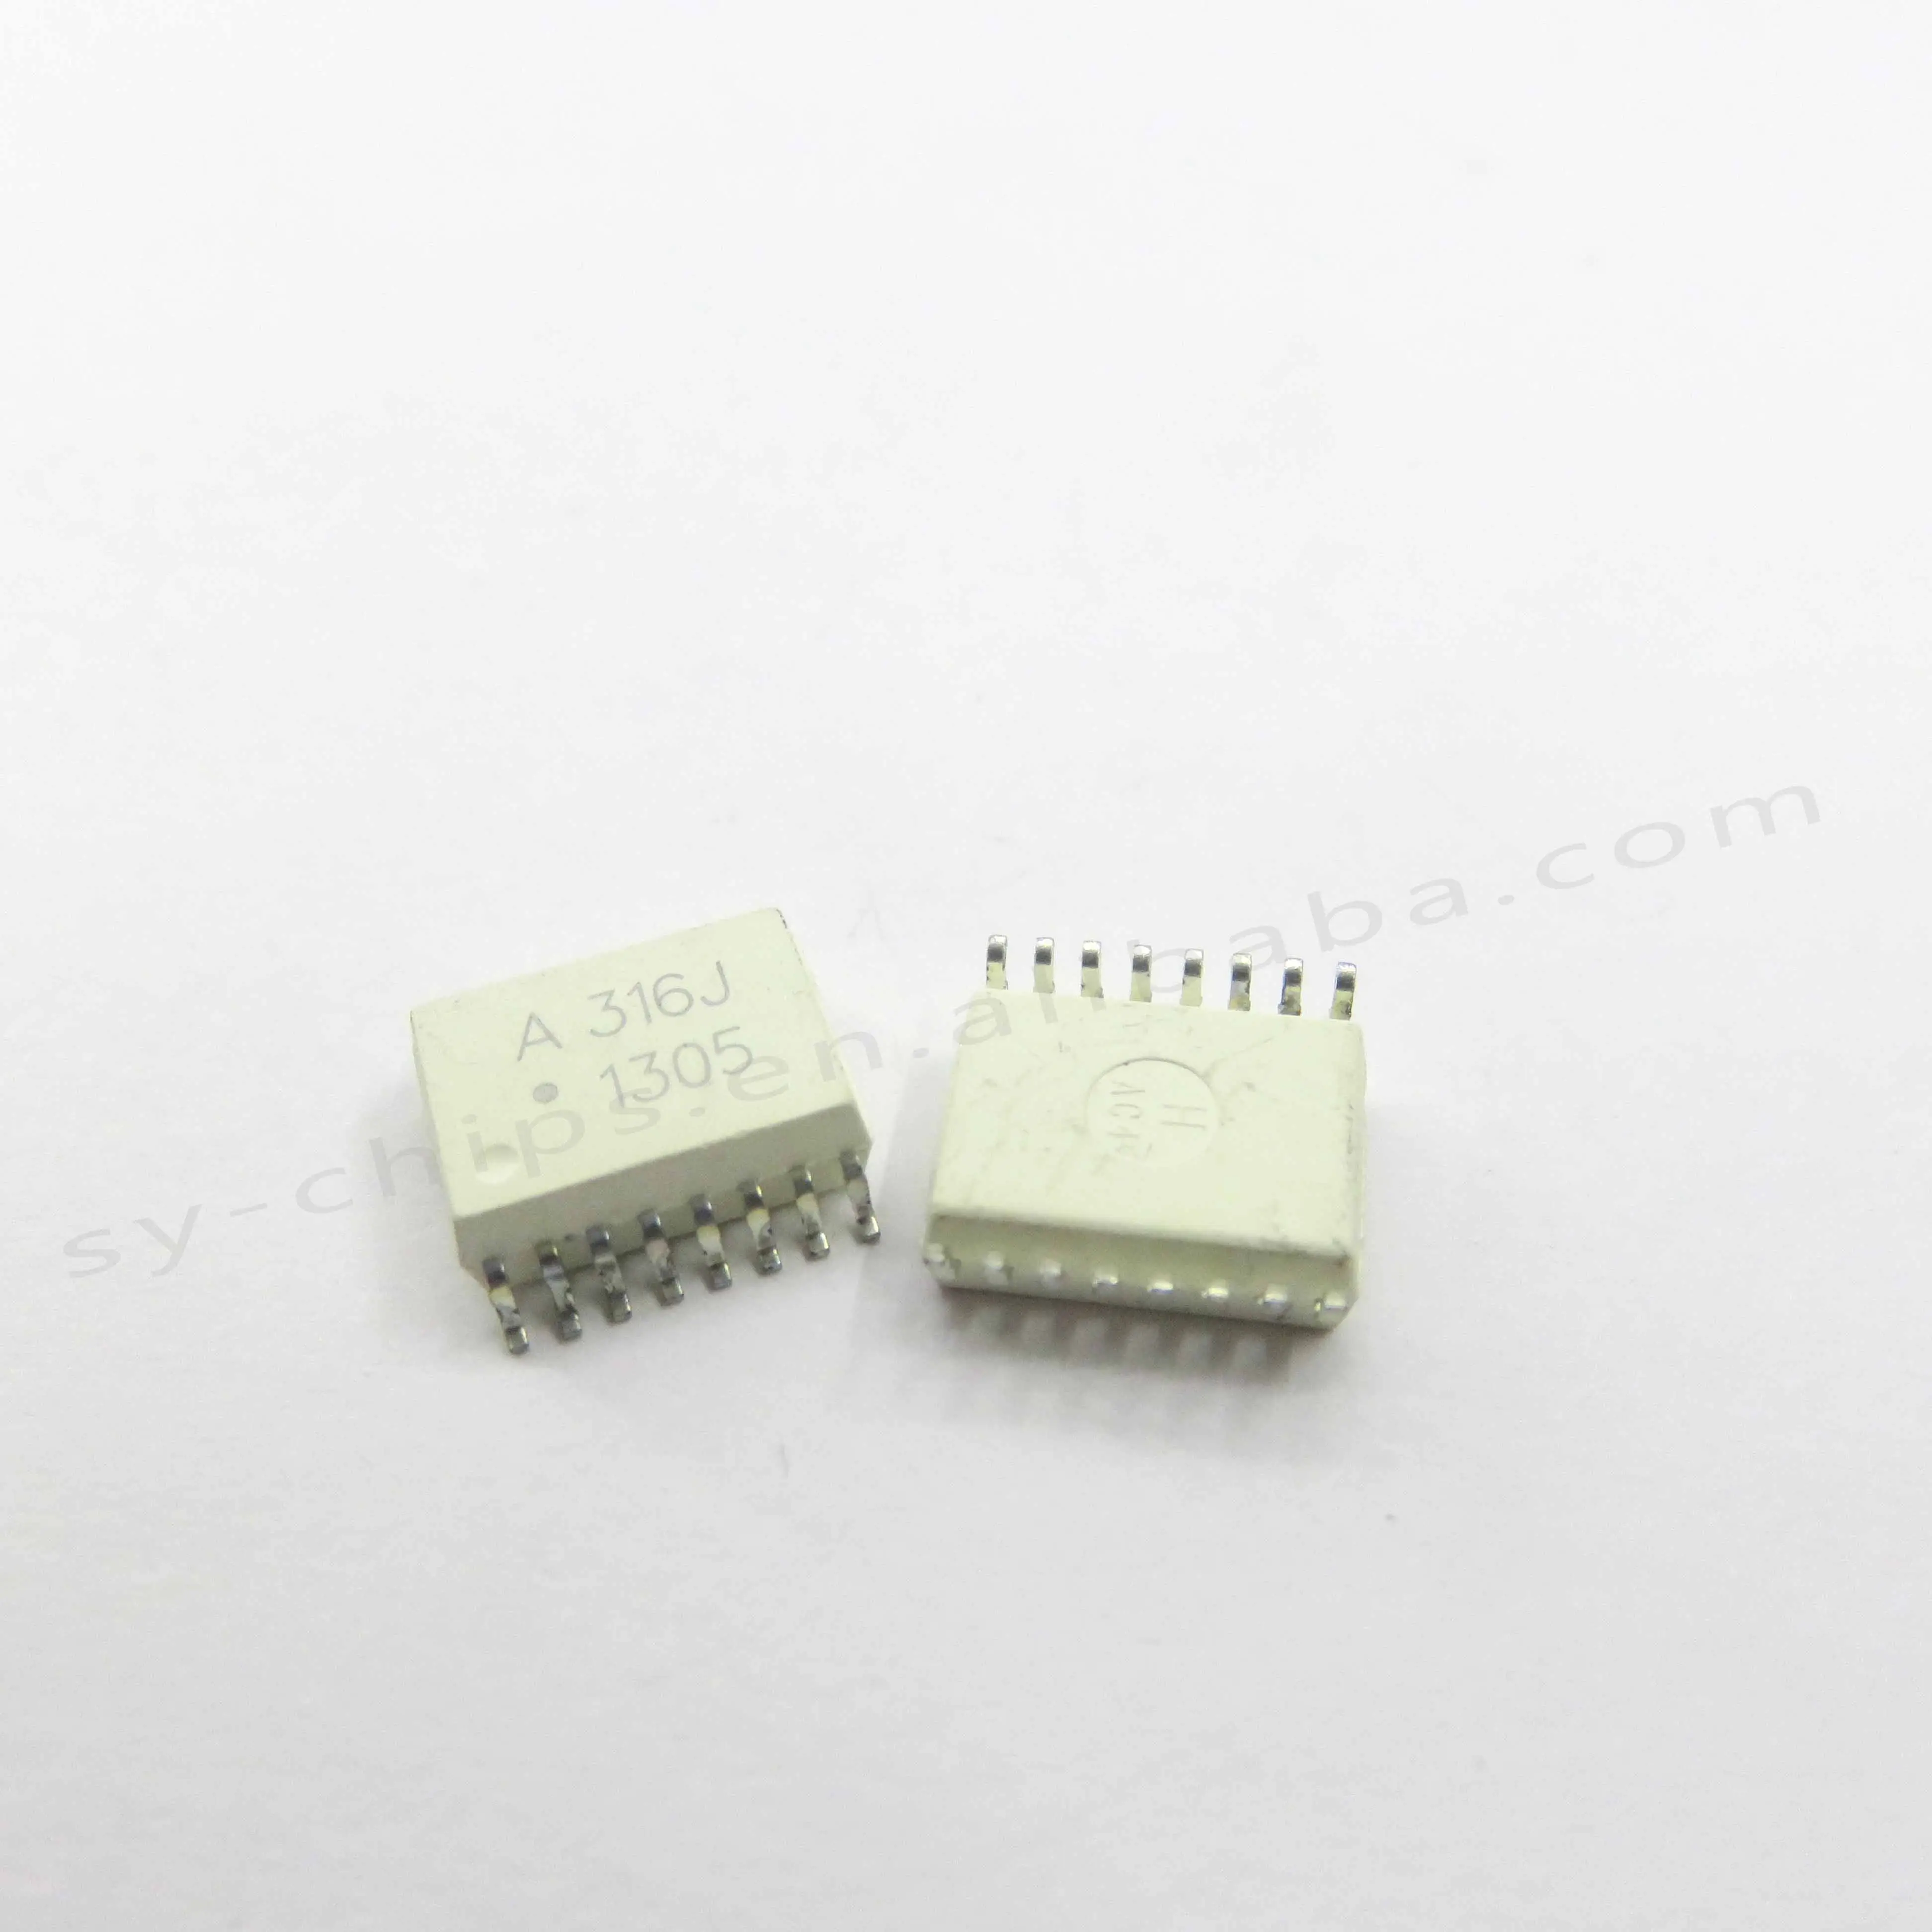 //-10/% Fer AEC-Q200 50 pieces Fixed Inductors 1.0uH 500mohms 50mA